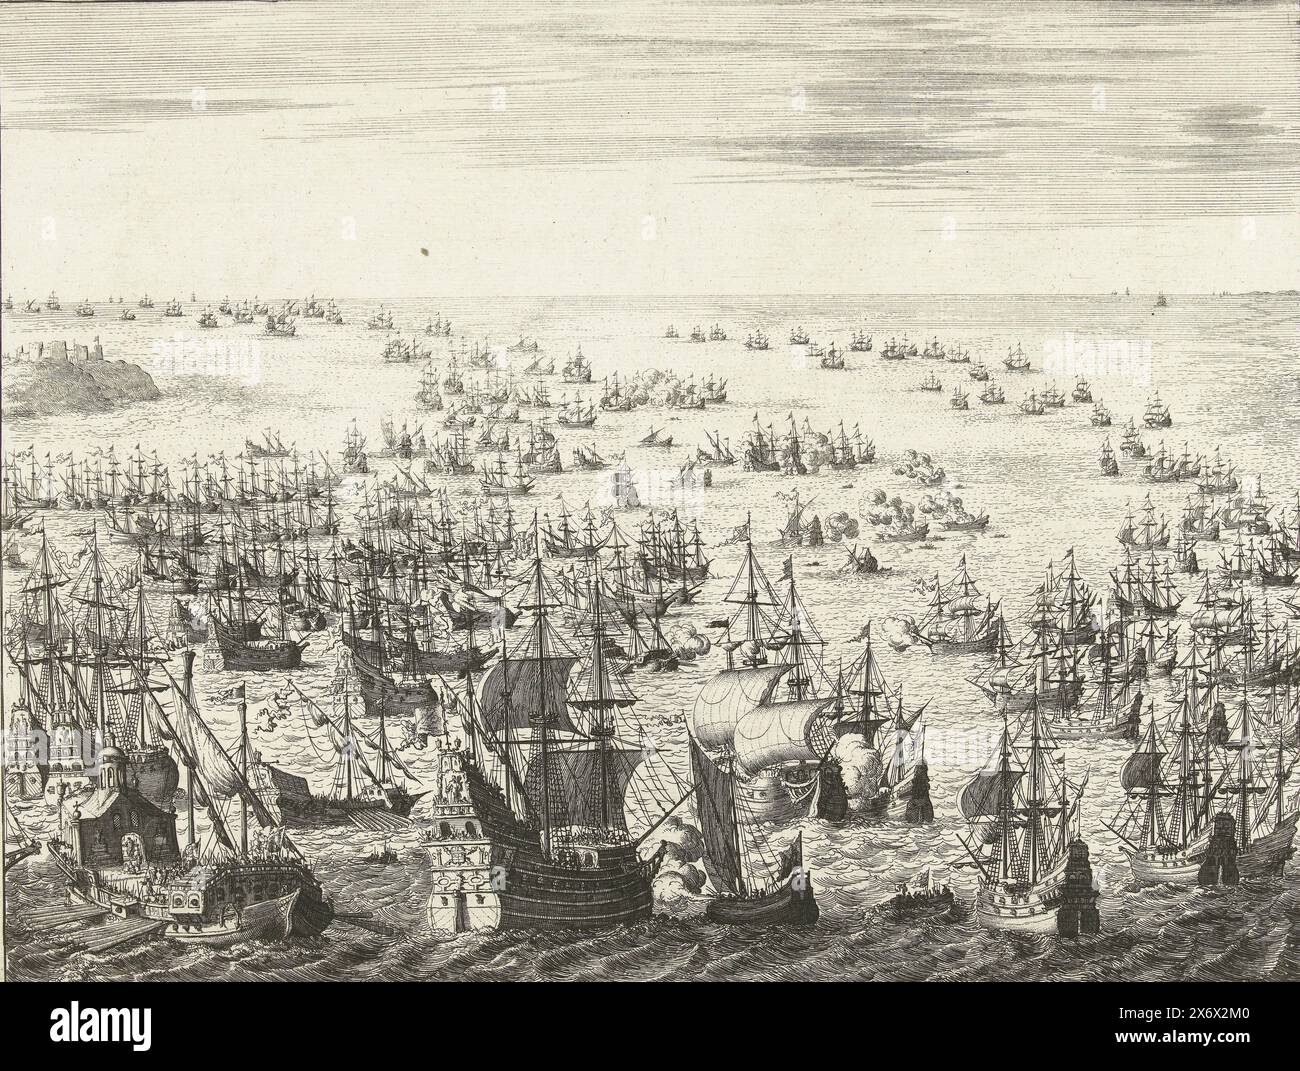 Disparition de l'Armada espagnole, la flotte de guerre espagnole du Jaere MDLXXXVIII (titre sur objet), disparition de l'Armada espagnole ou flotte invincible, entre le 31 juillet et le 12 août 1588. Bataille navale entre les flottes espagnole et anglaise et néerlandaise dans la Manche. Au premier plan, une grande frégate espagnole est attaquée par un petit navire hollandais avec la bannière de la ville de Leyde, à gauche une galère., imprimeur : Jan Luyken, (mentionné sur l'objet), pays-Bas du Nord, 1679 - 1681, papier, gravure, hauteur, 272 mm × largeur, 350 mm Banque D'Images